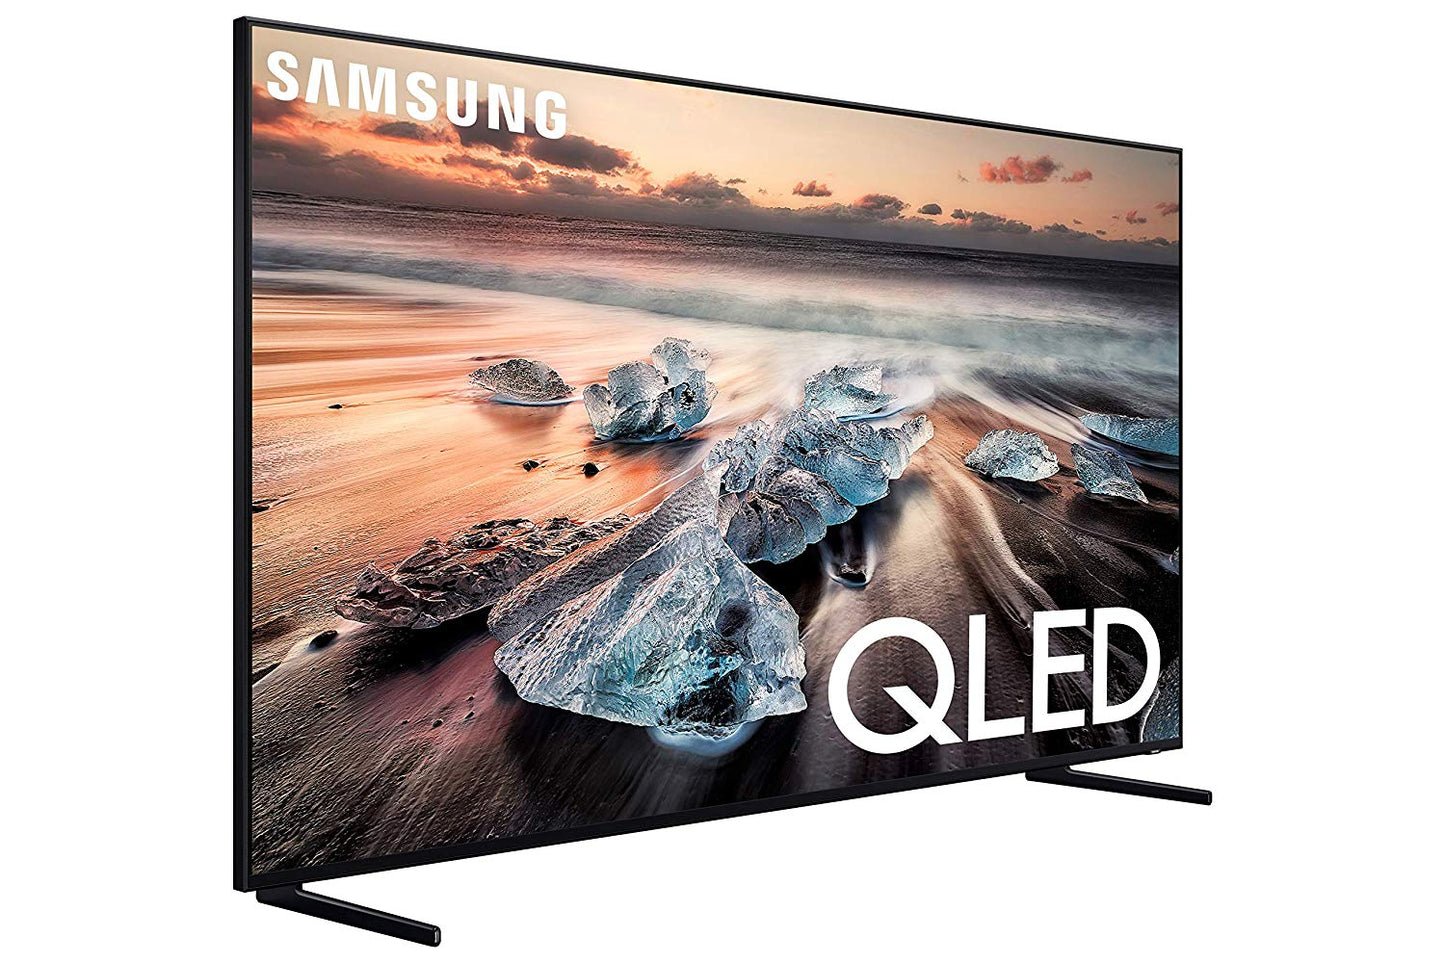 Samsung QN55Q900 Flat 55-In QLED 8K Q900 Ultra HD Smart TV with Alexa (2019 Model)